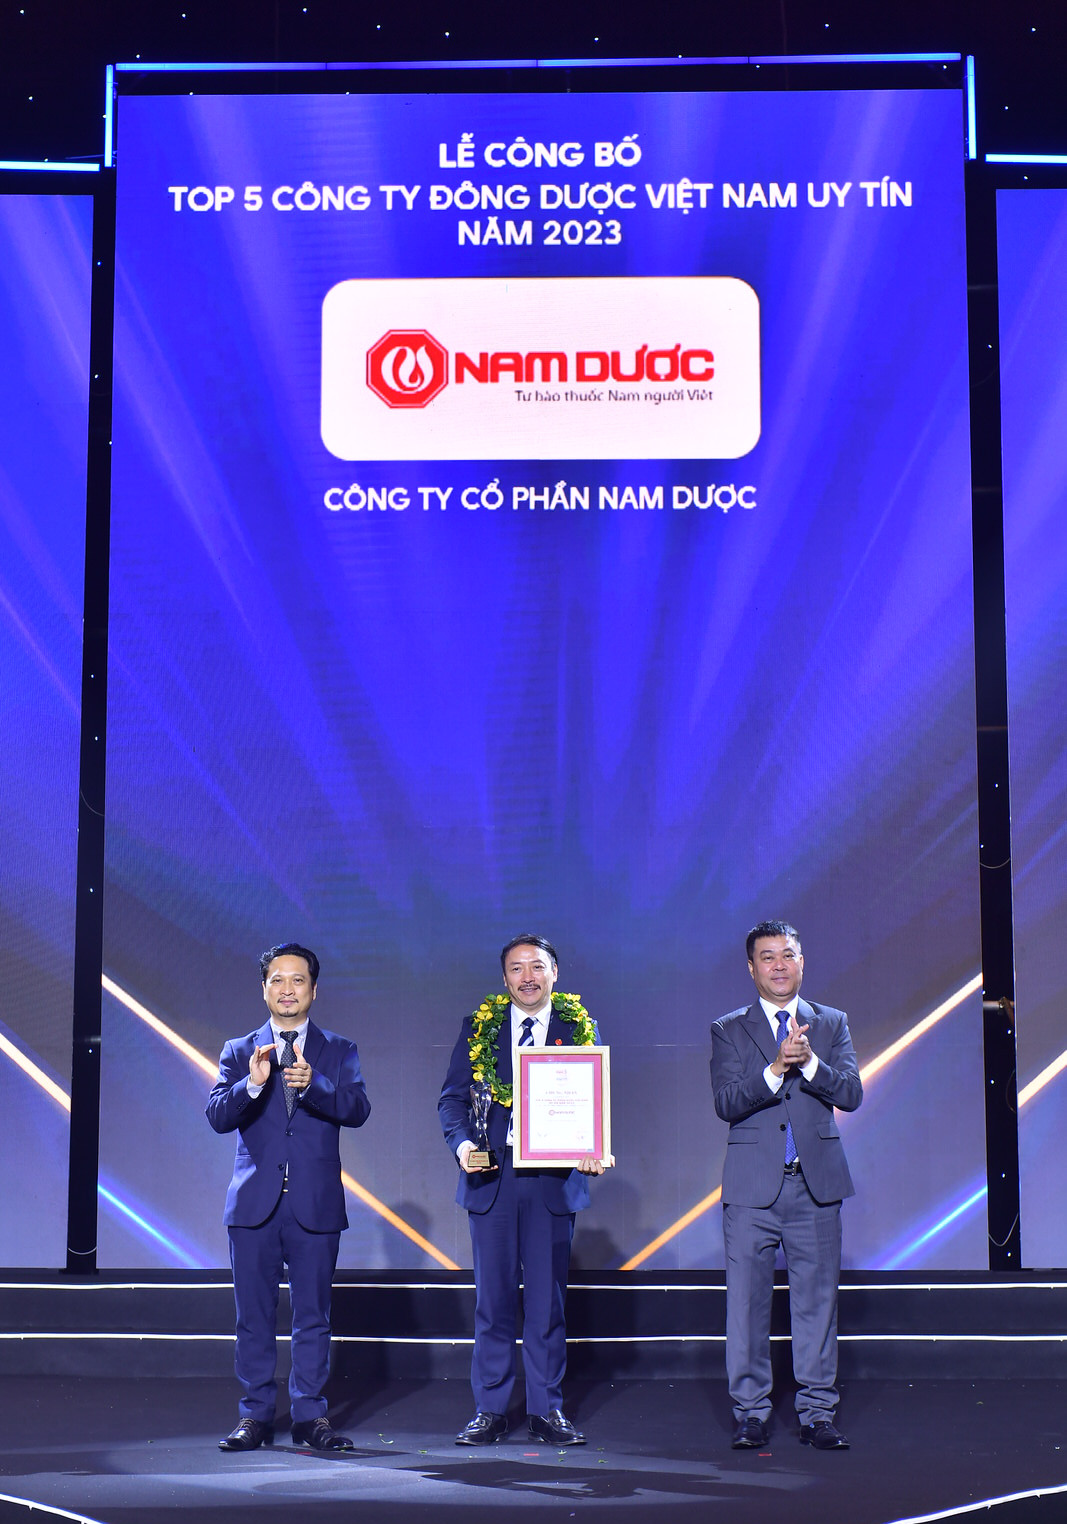 Tổng Giám đốc Hoàng Minh Châu nhận giải thưởng Top 5 Công ty Đông dược Việt Nam uy tín năm 2023